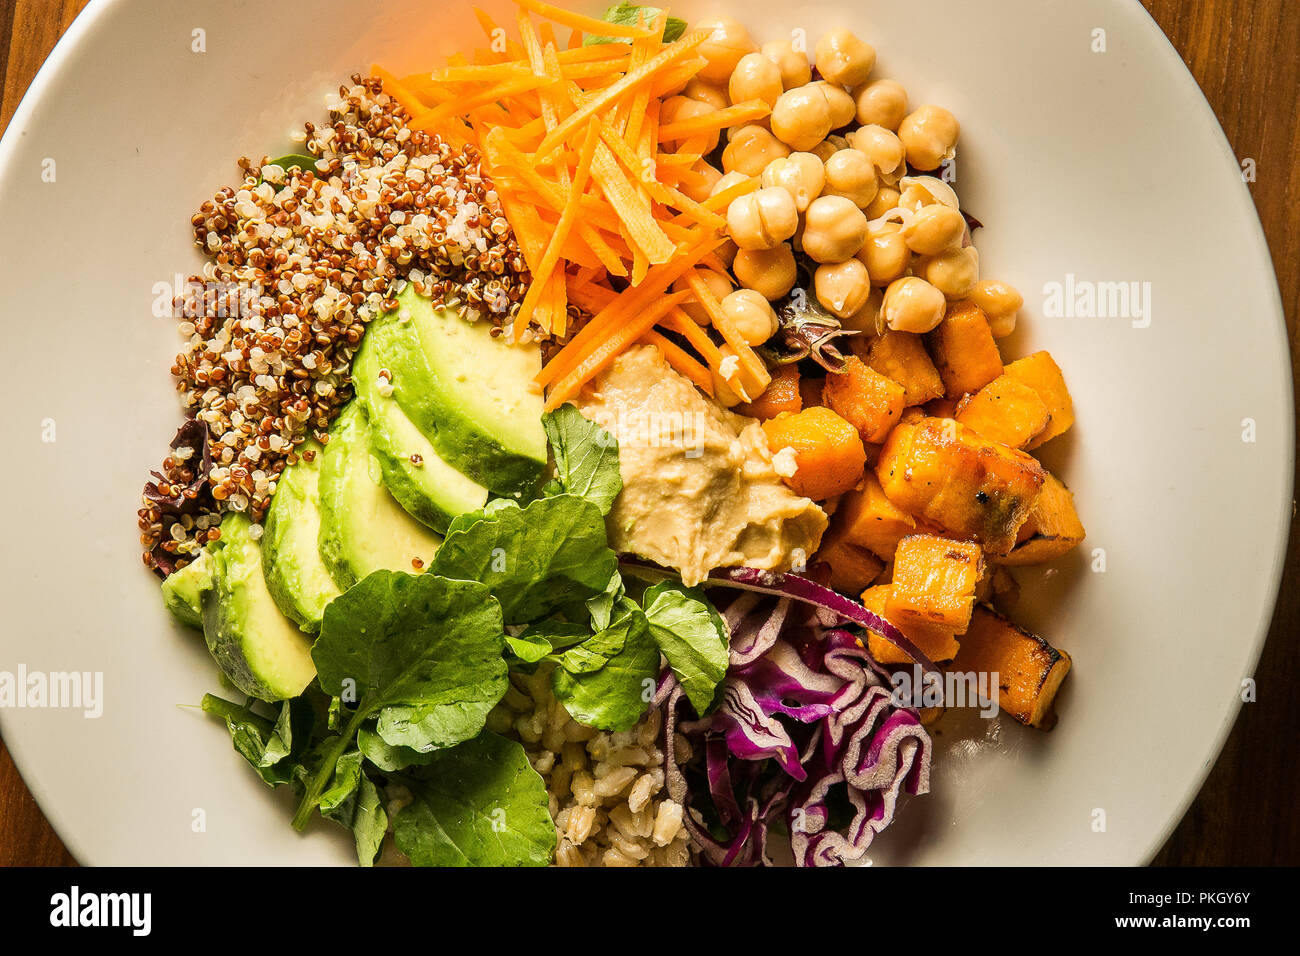 Vegetarische Salat, können Sie Fleisch oder Garnelen und Meeresfrüchte.  Arpi Pap Studio Fotografie Stockfotografie - Alamy